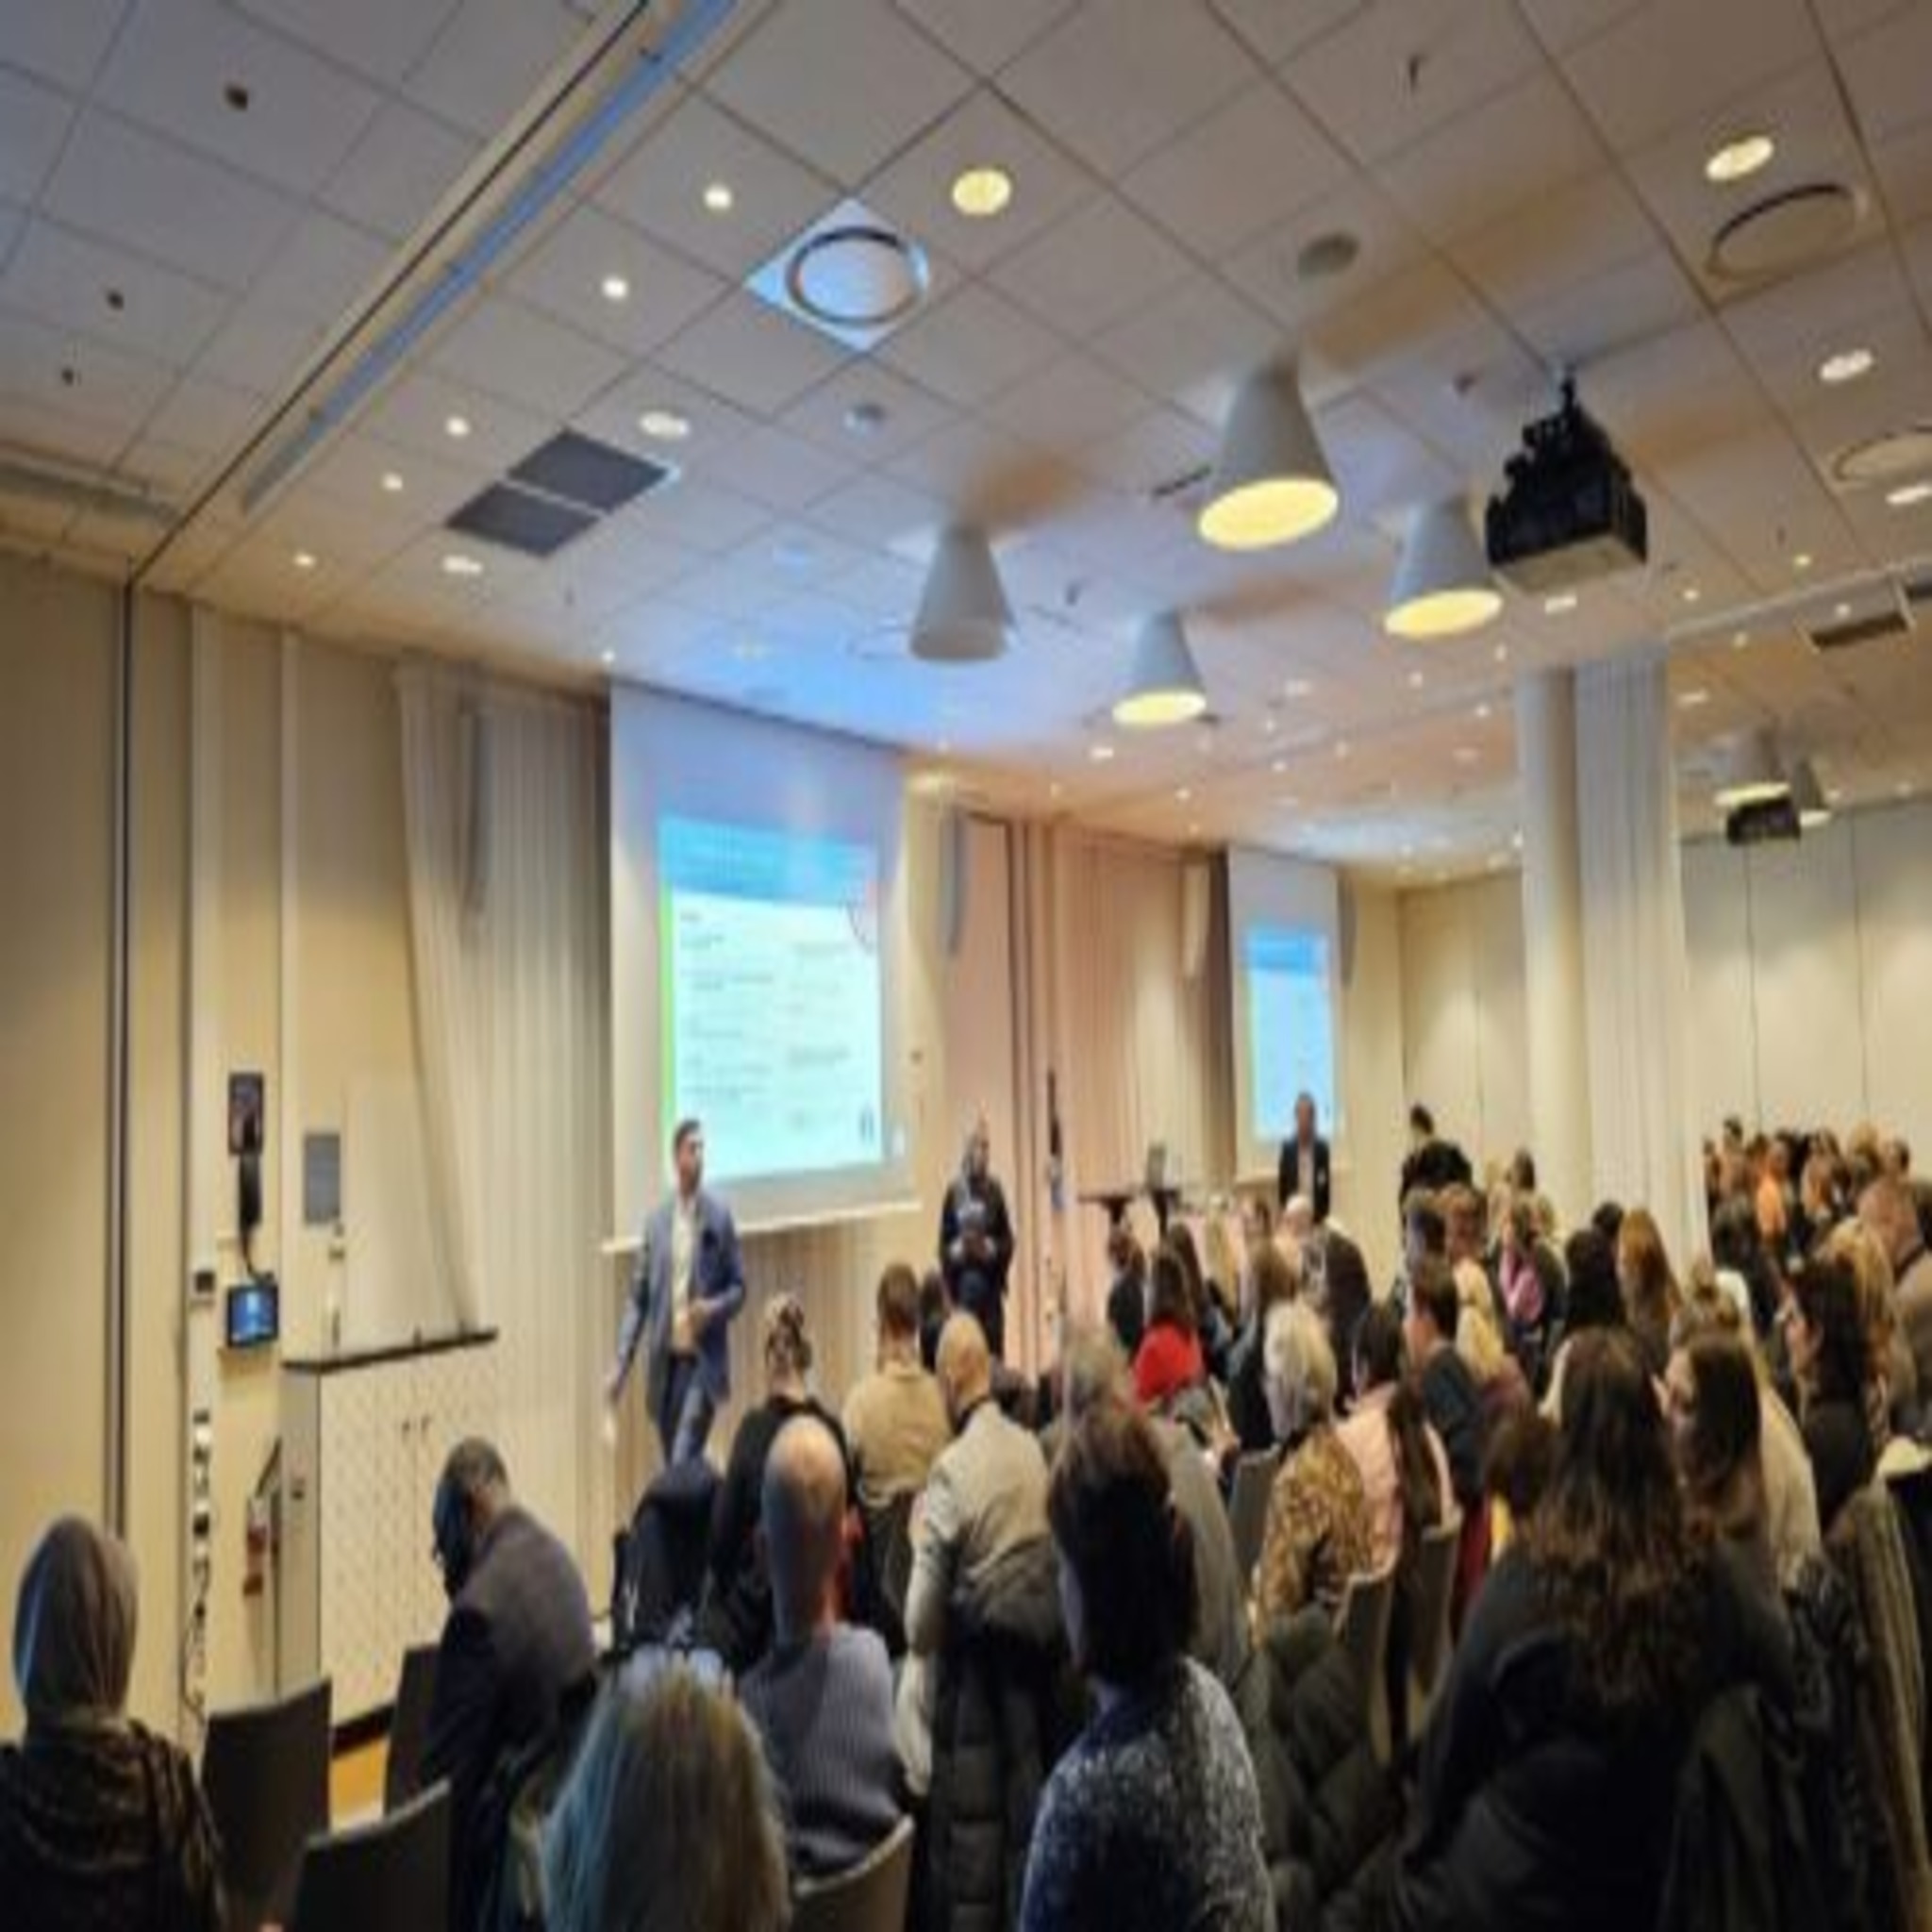 Konferensen Antiziganism och förutsättningar för romskt liv i Malmö